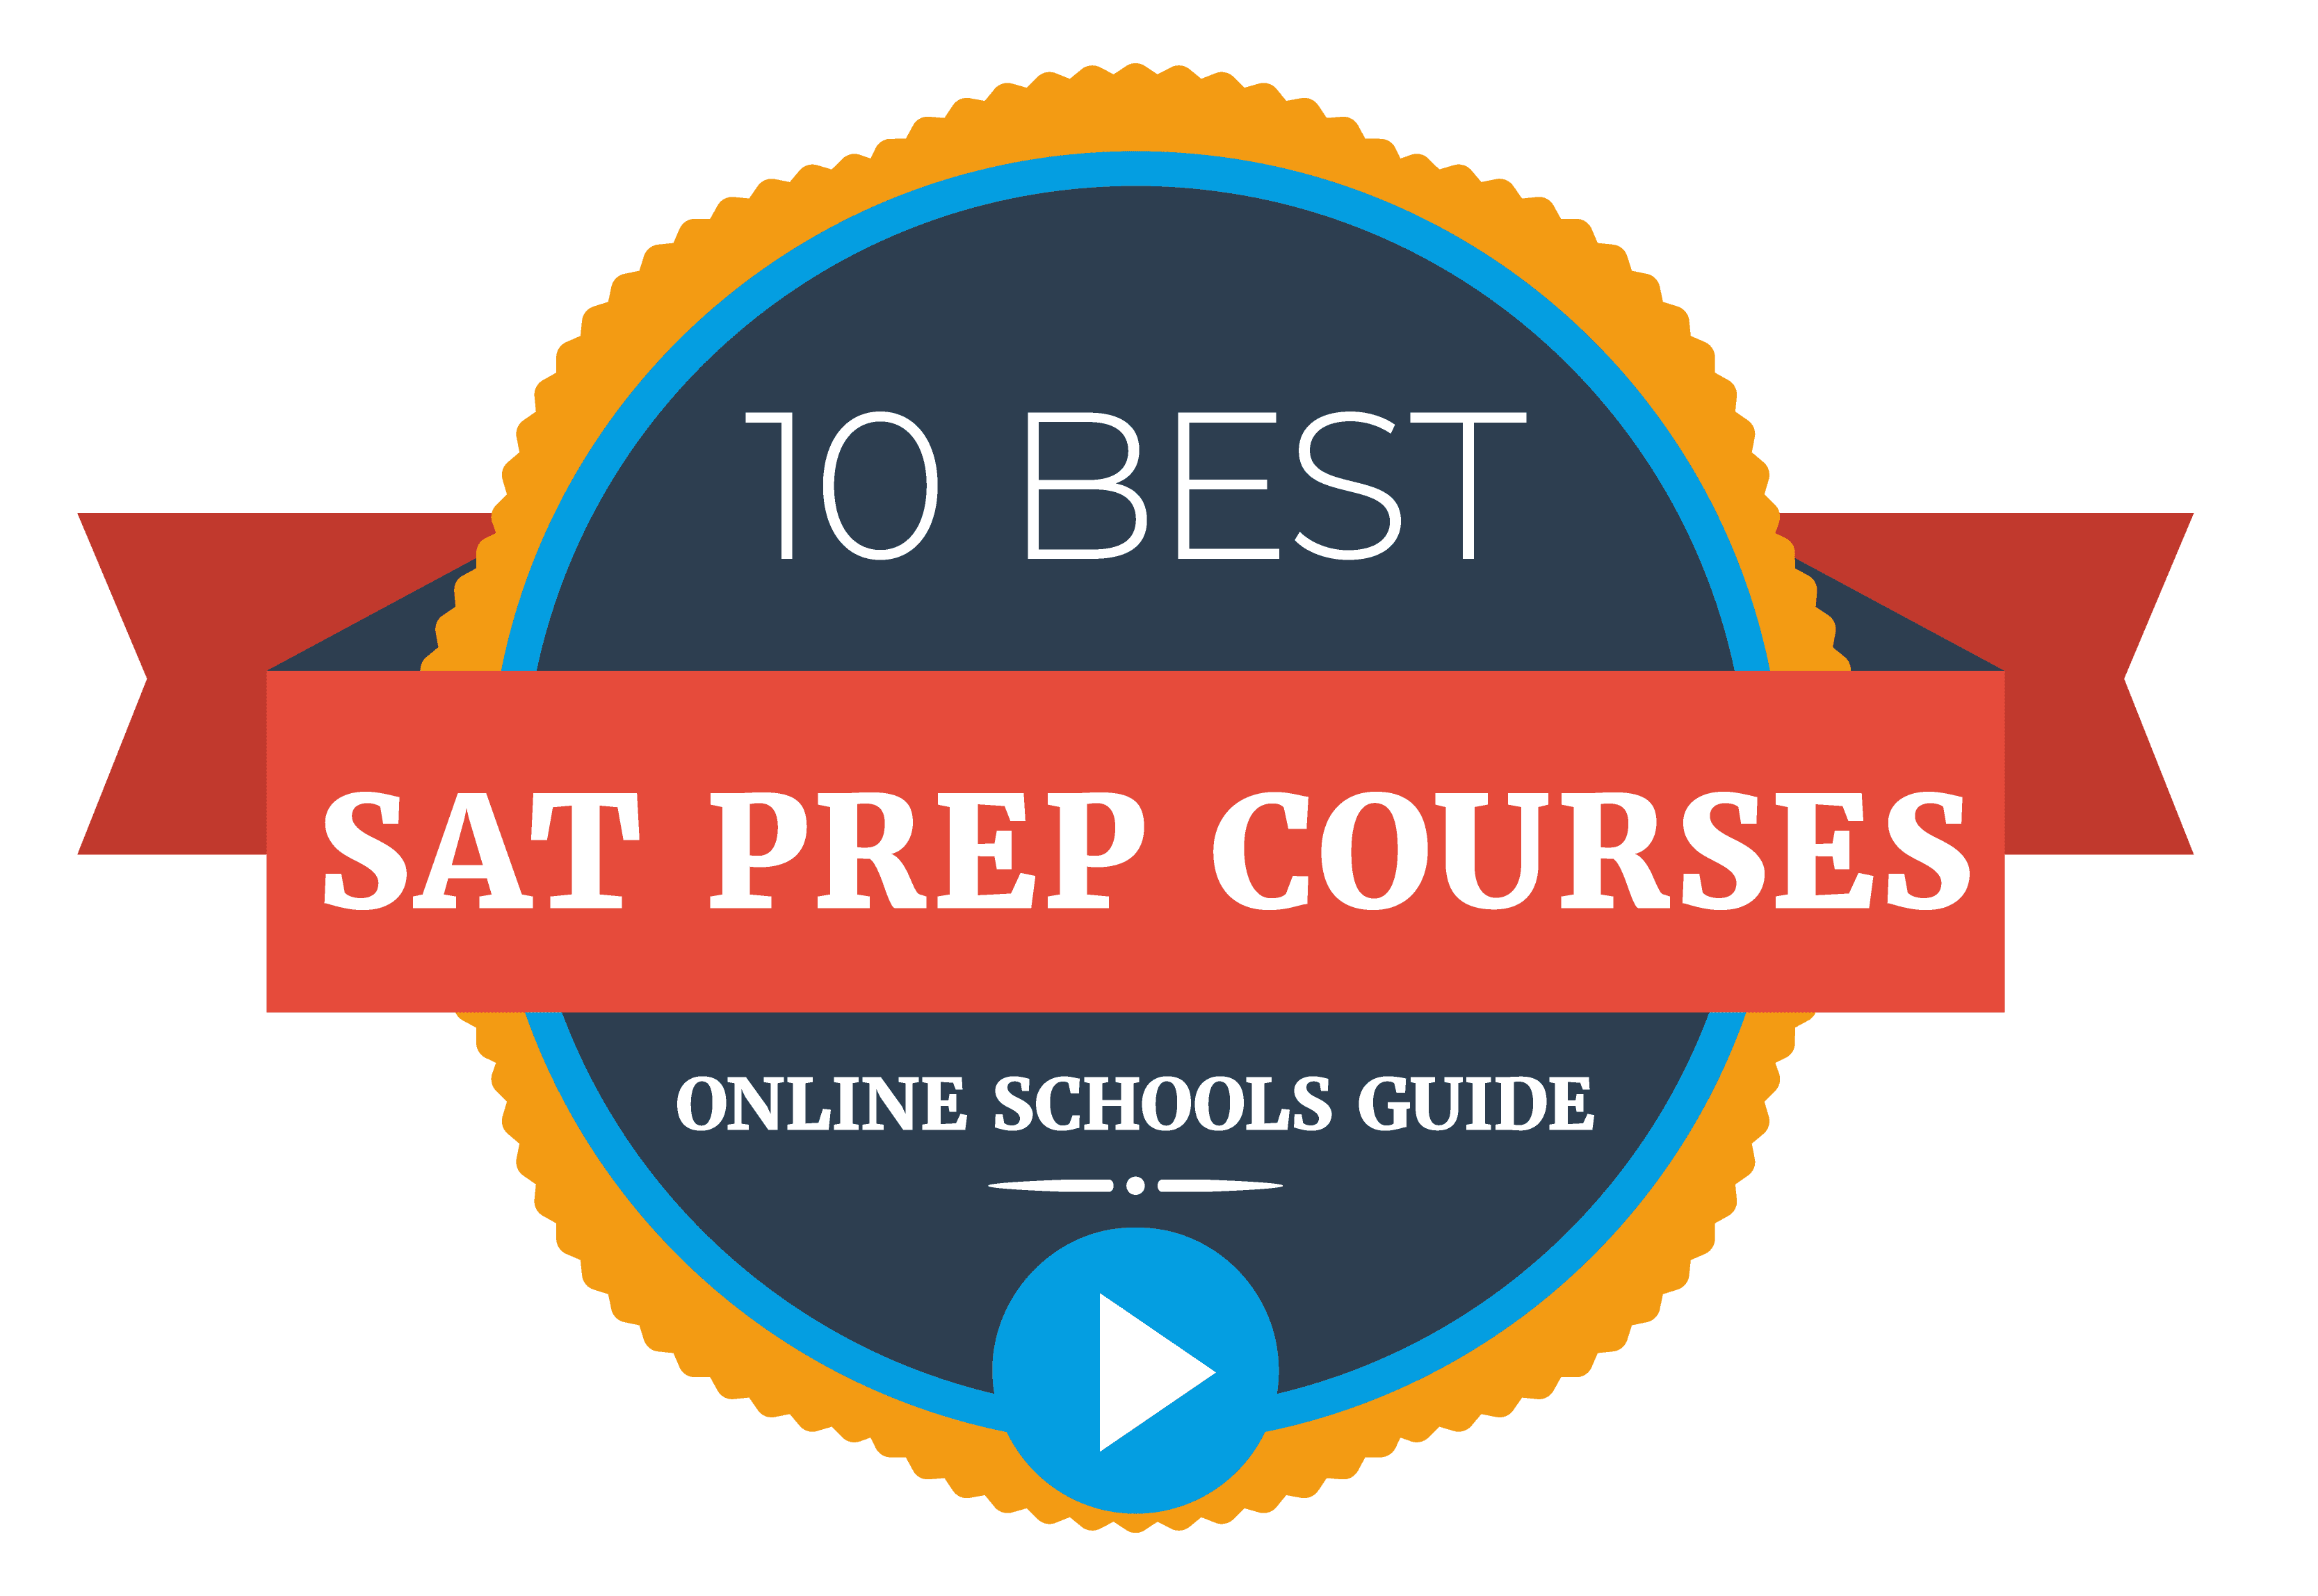 OSG 10 best SAT prep courses01 Online Schools Guide